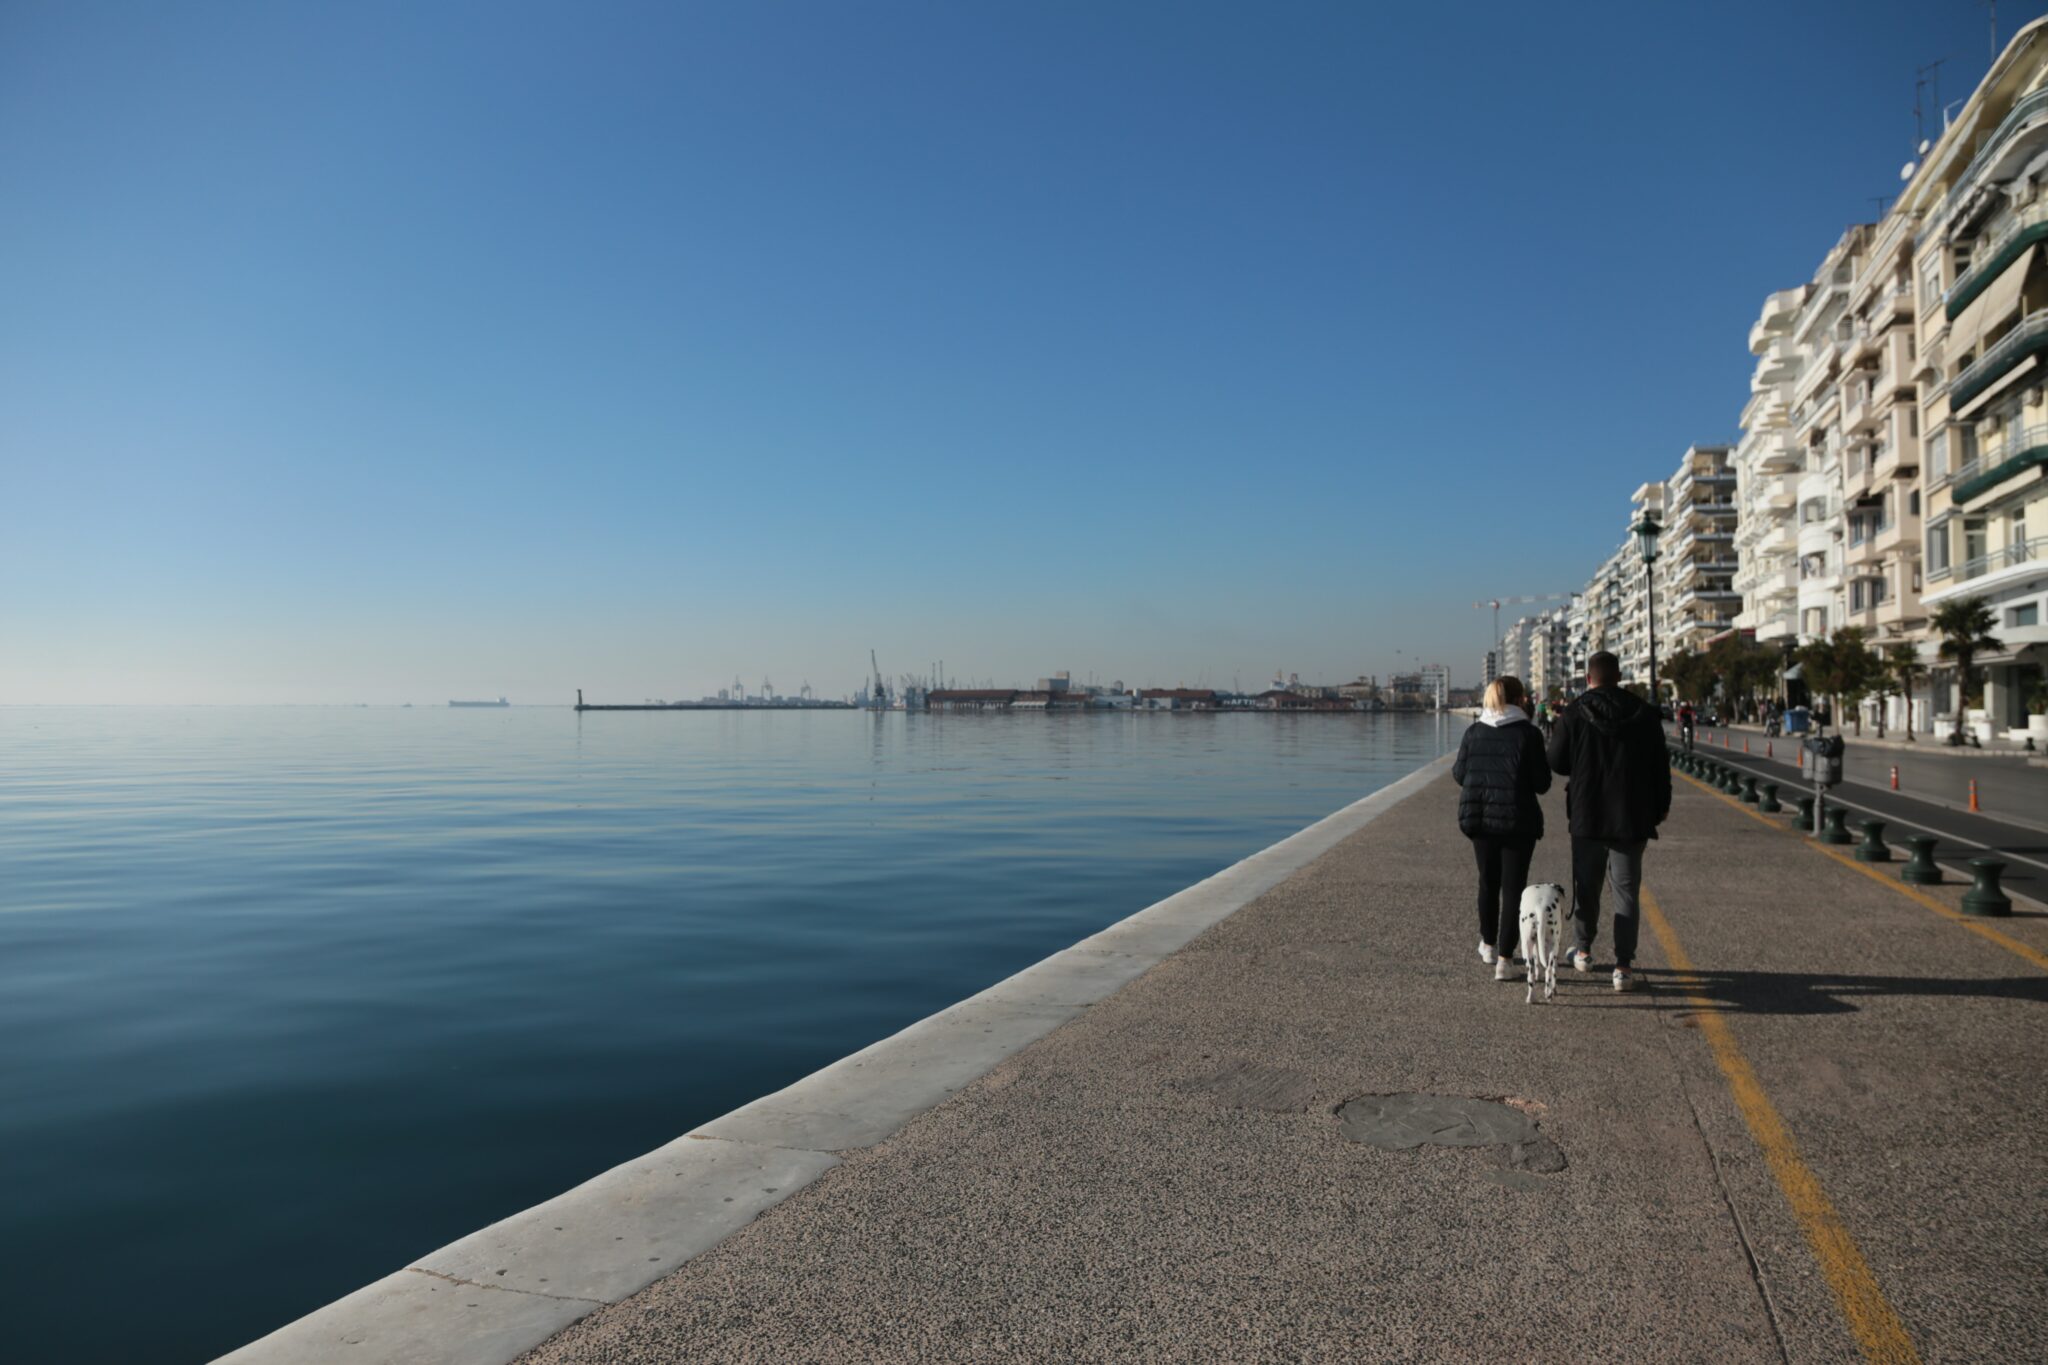 Θεσσαλονίκη: Μια ανερχόμενη πόλη-προορισμός για τις εορταστικές διακοπές
